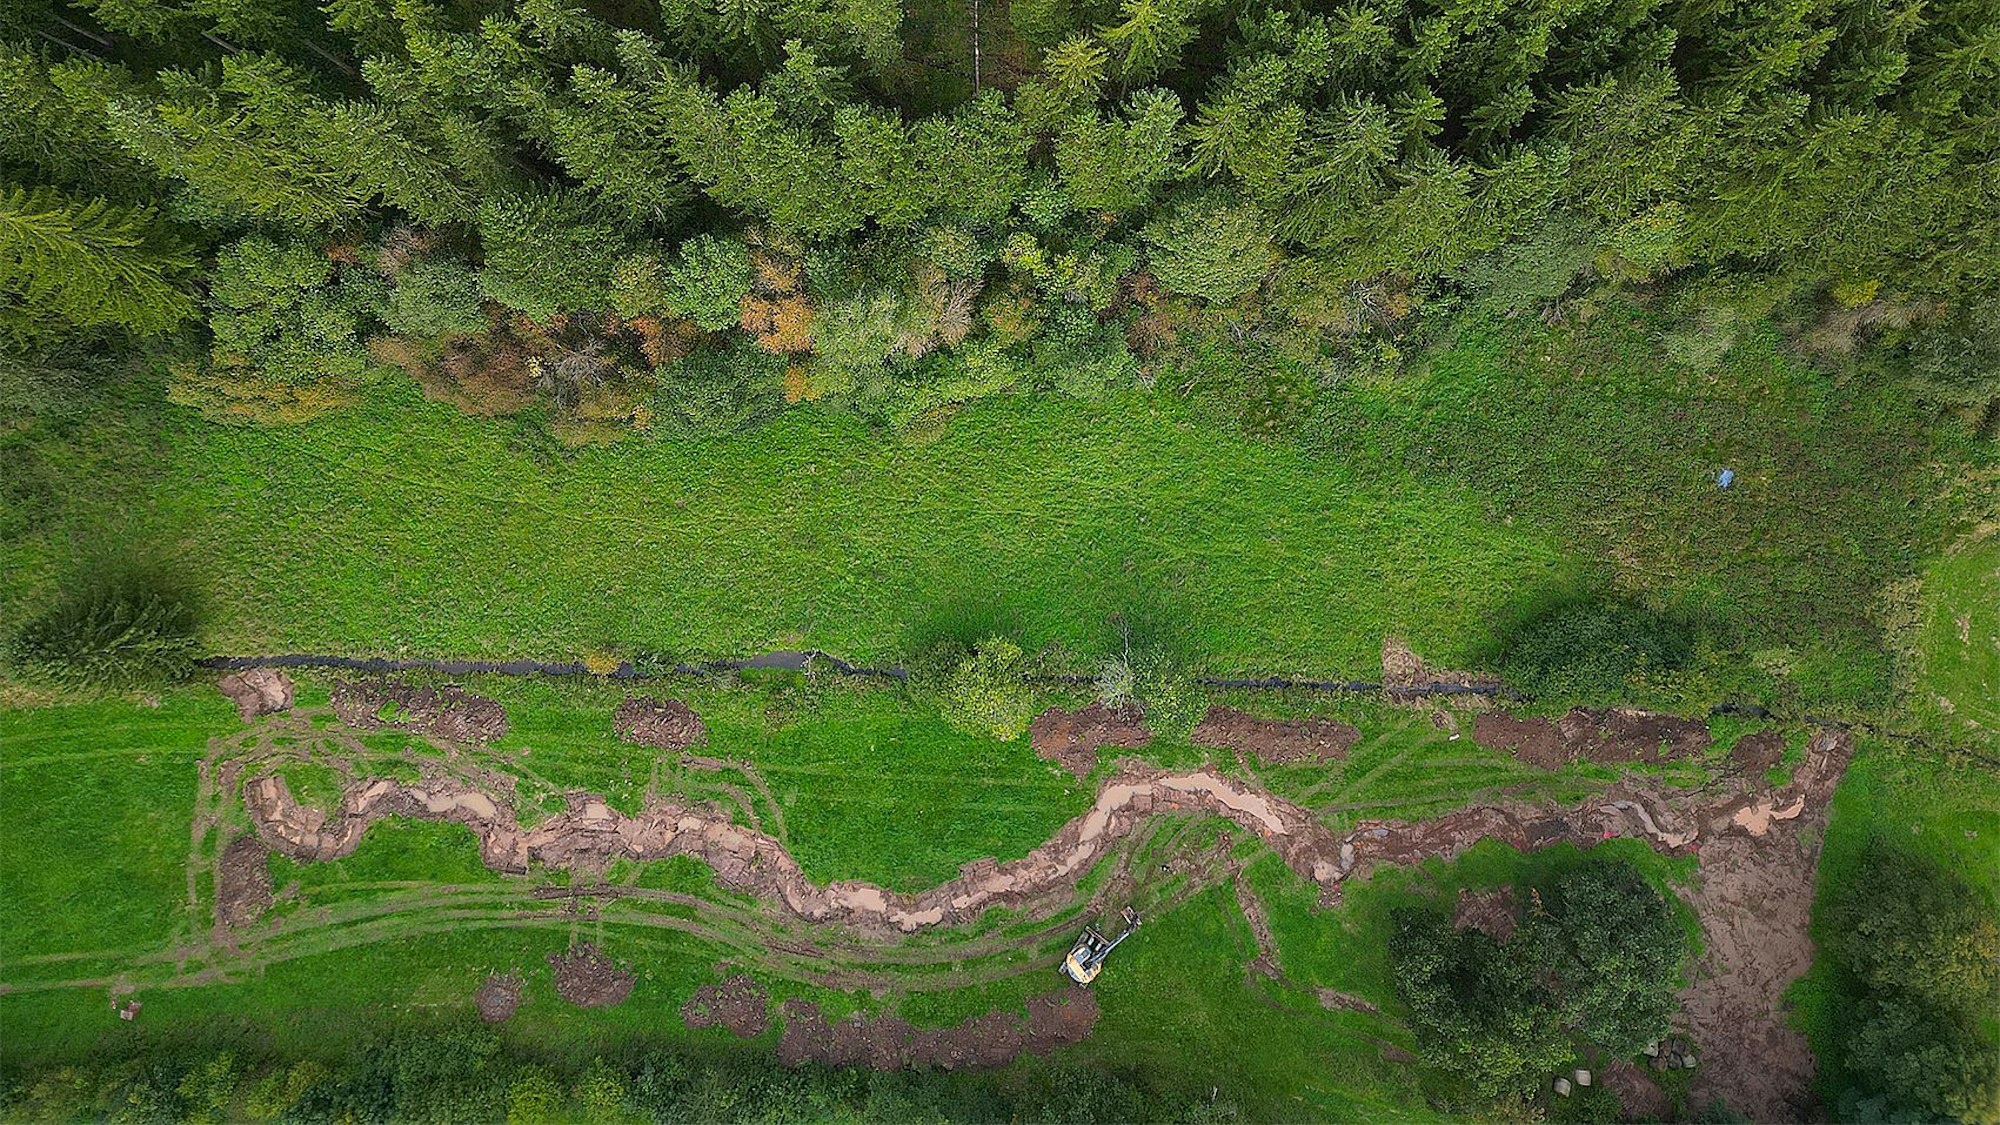 Das Luftbild zeigt unten den neuen, mäandernden Lauf der Berke. Darüber ist der gerade, alte Bachlauf zu erkennen, oben im Bild sind Bäume.